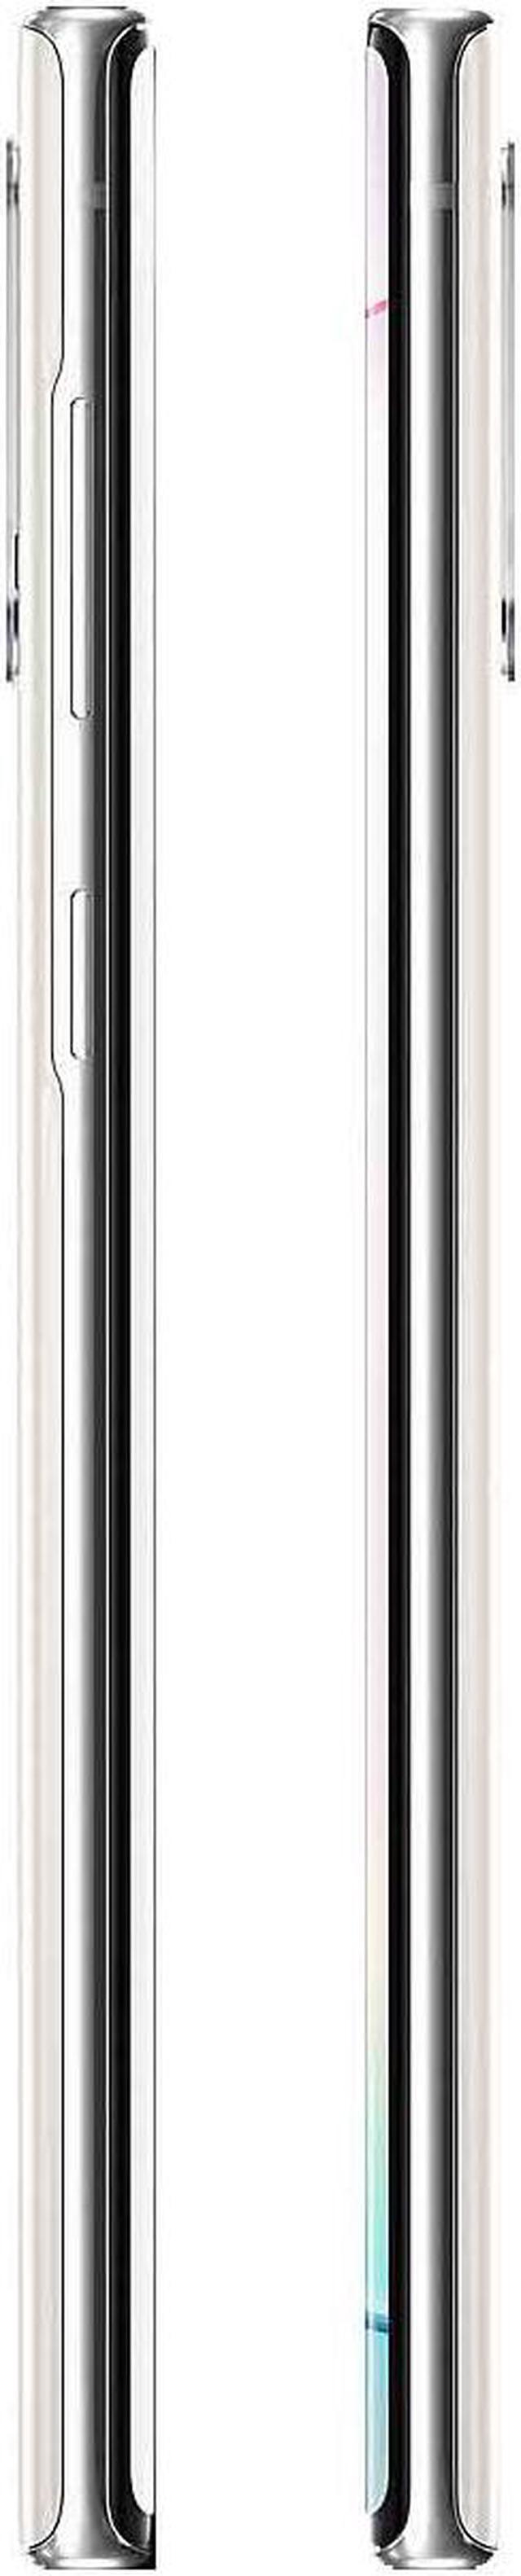 Samsung Galaxy Note 10 256GB SM-N970U1 GSM Factory Unlocked 4G LTE